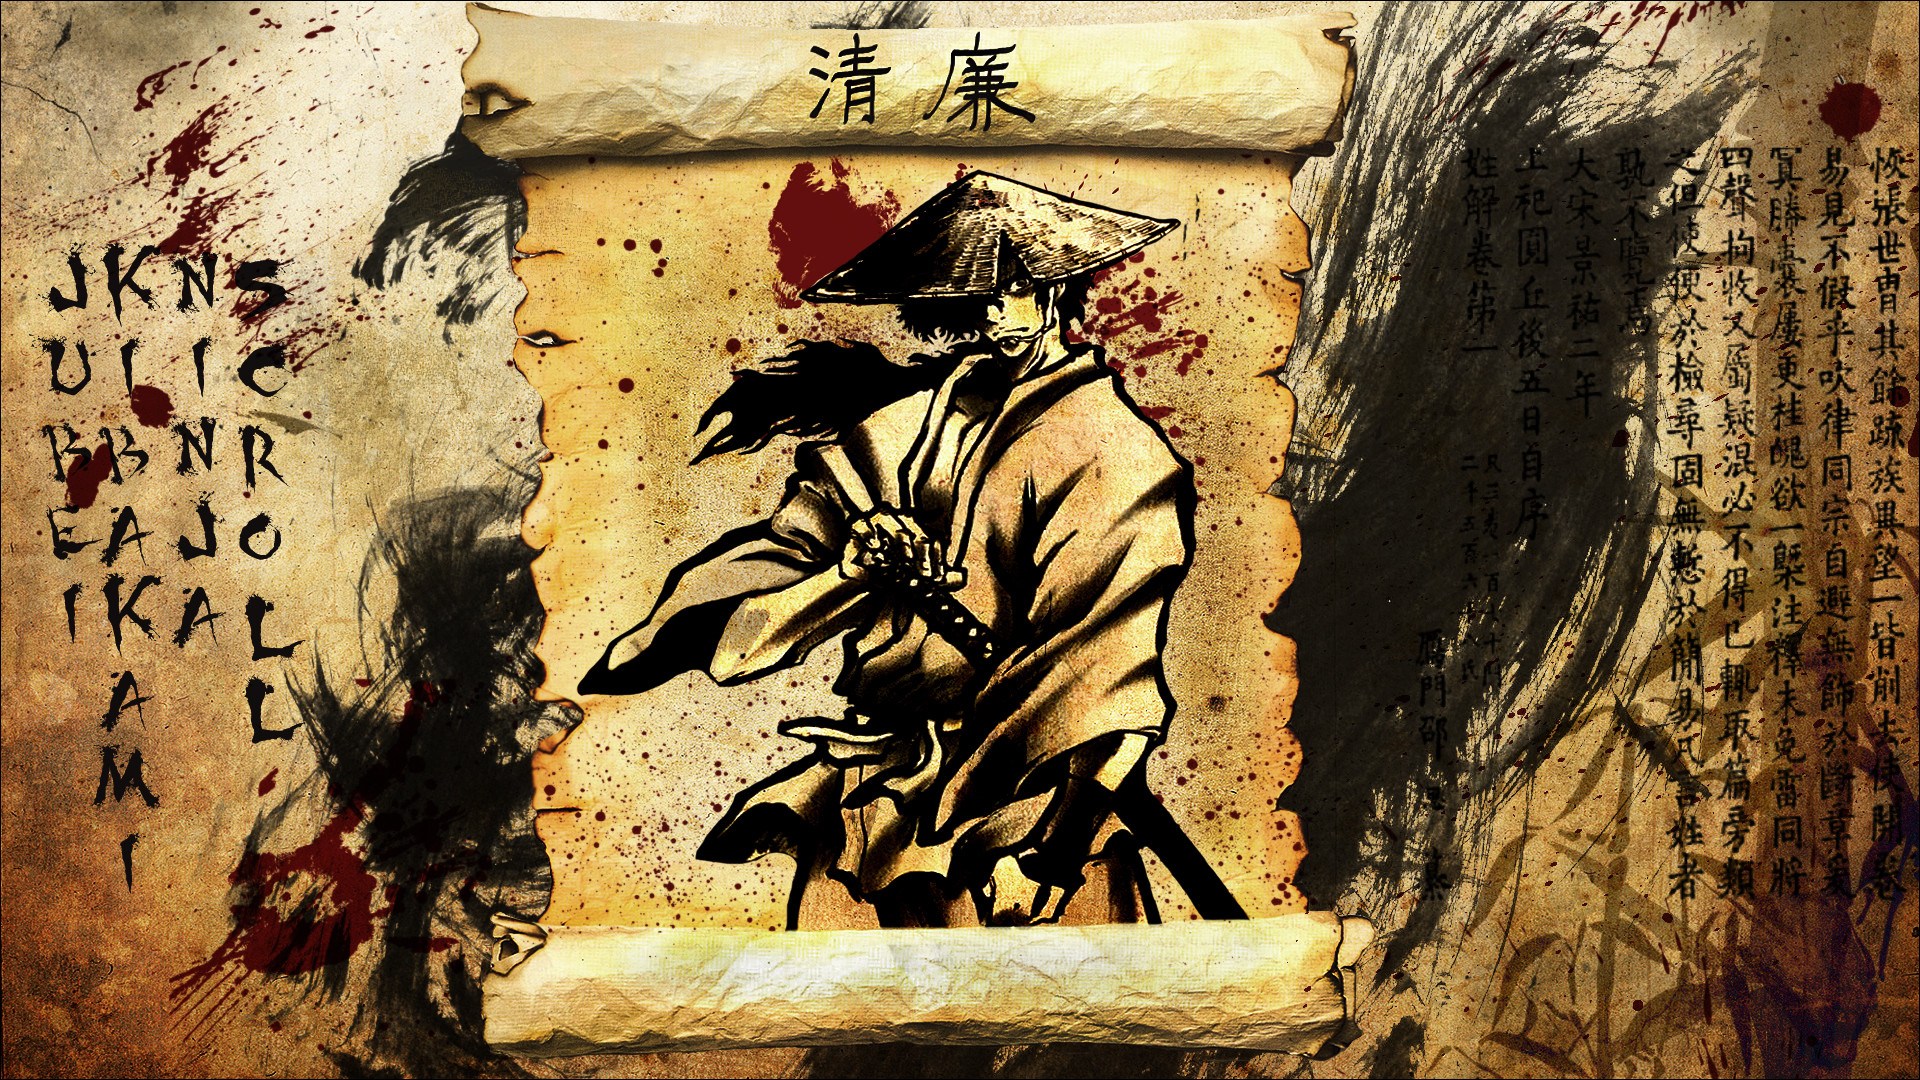 1920x1080 Ninja Scroll Jubei Wallpaper by Edd000 